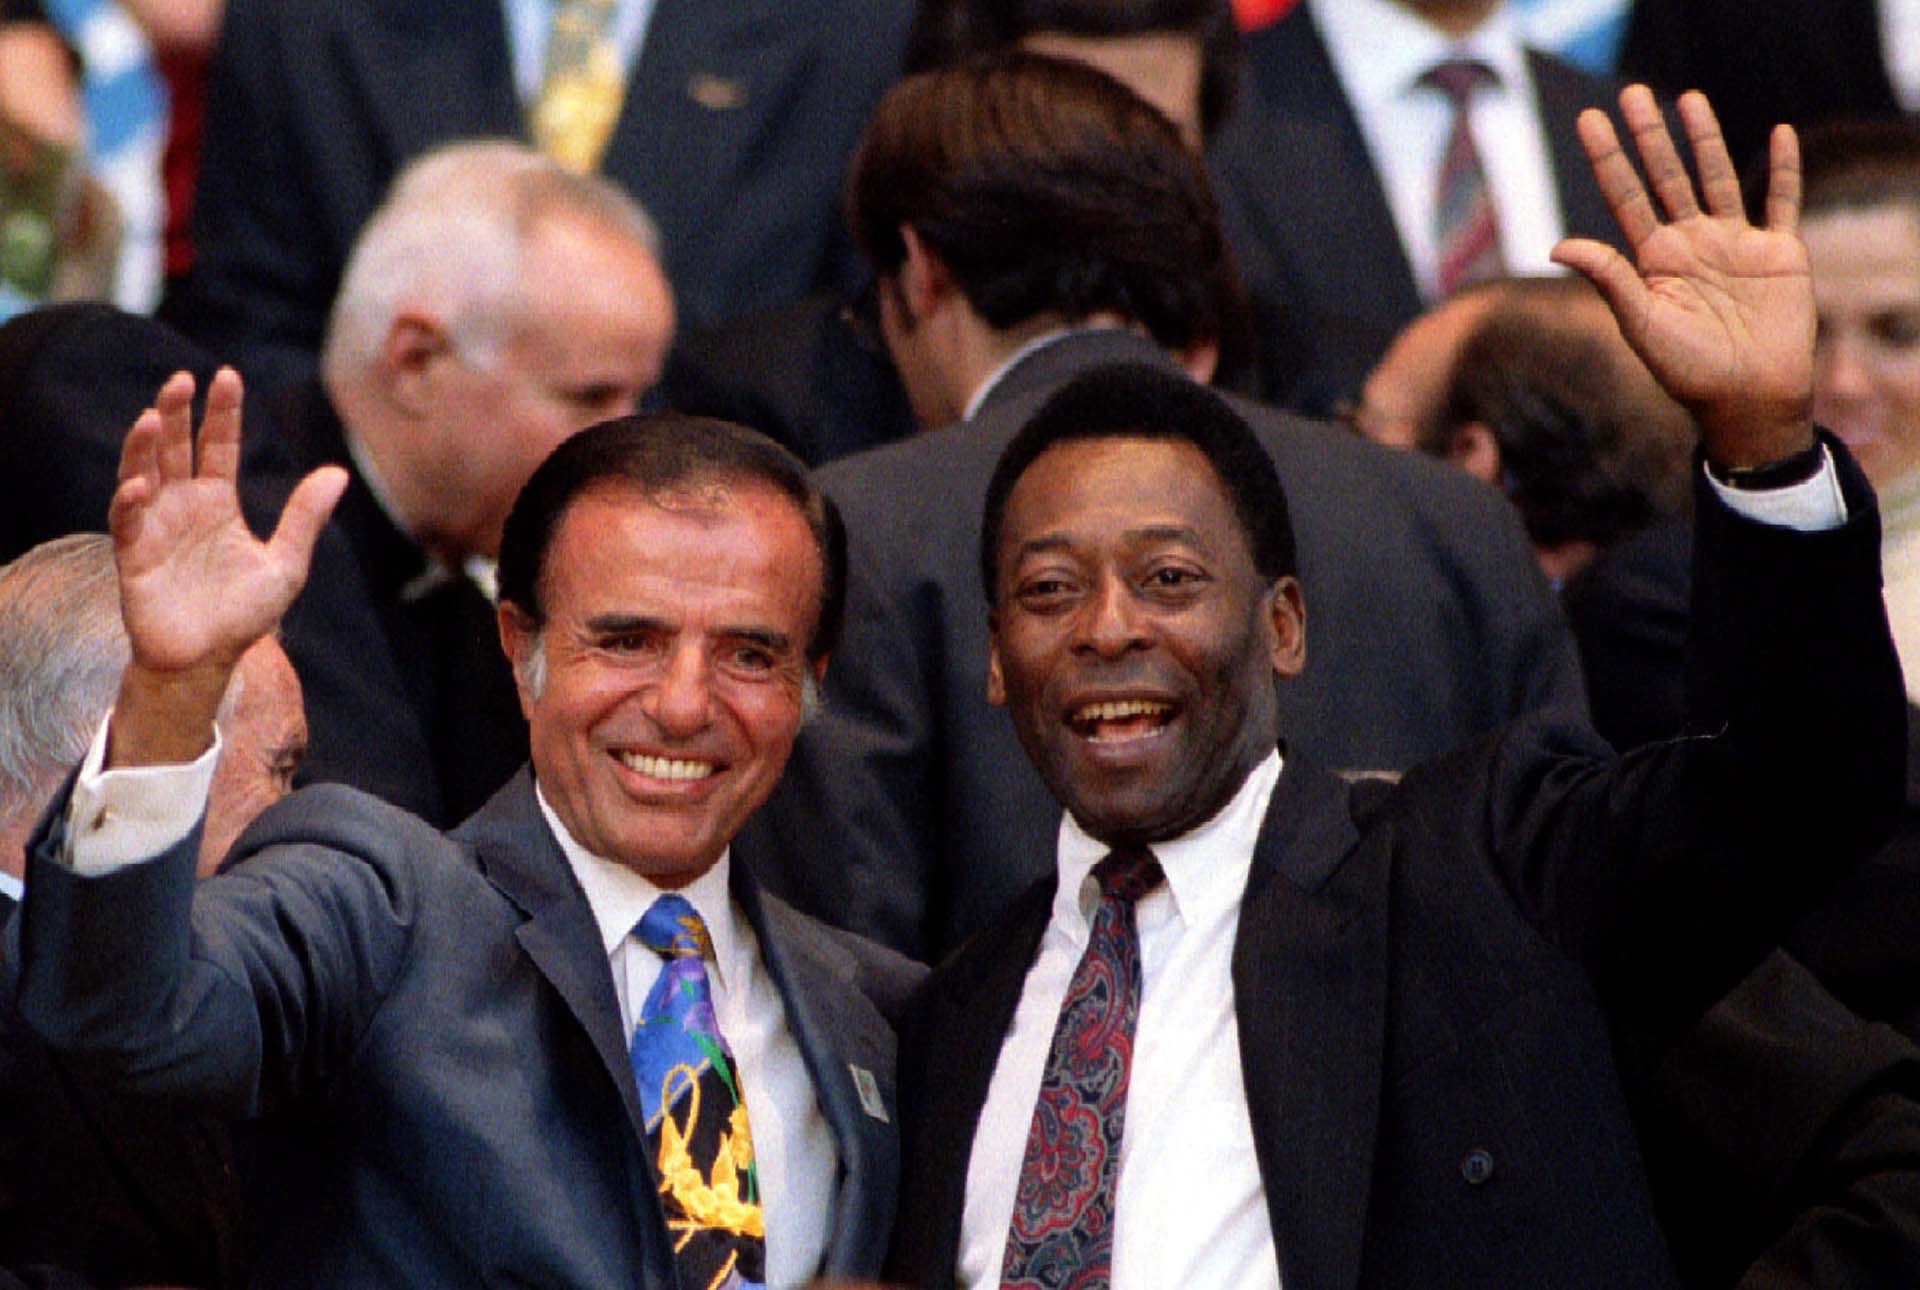 El riojano saluda con Pelé durante la ceremonis inaugural de los Juegos Panamericanos, que se llevaron a cabo en Mar del Plata en 1995. En ese entonces, el astro brasileño era el Ministro de Deportes de su país